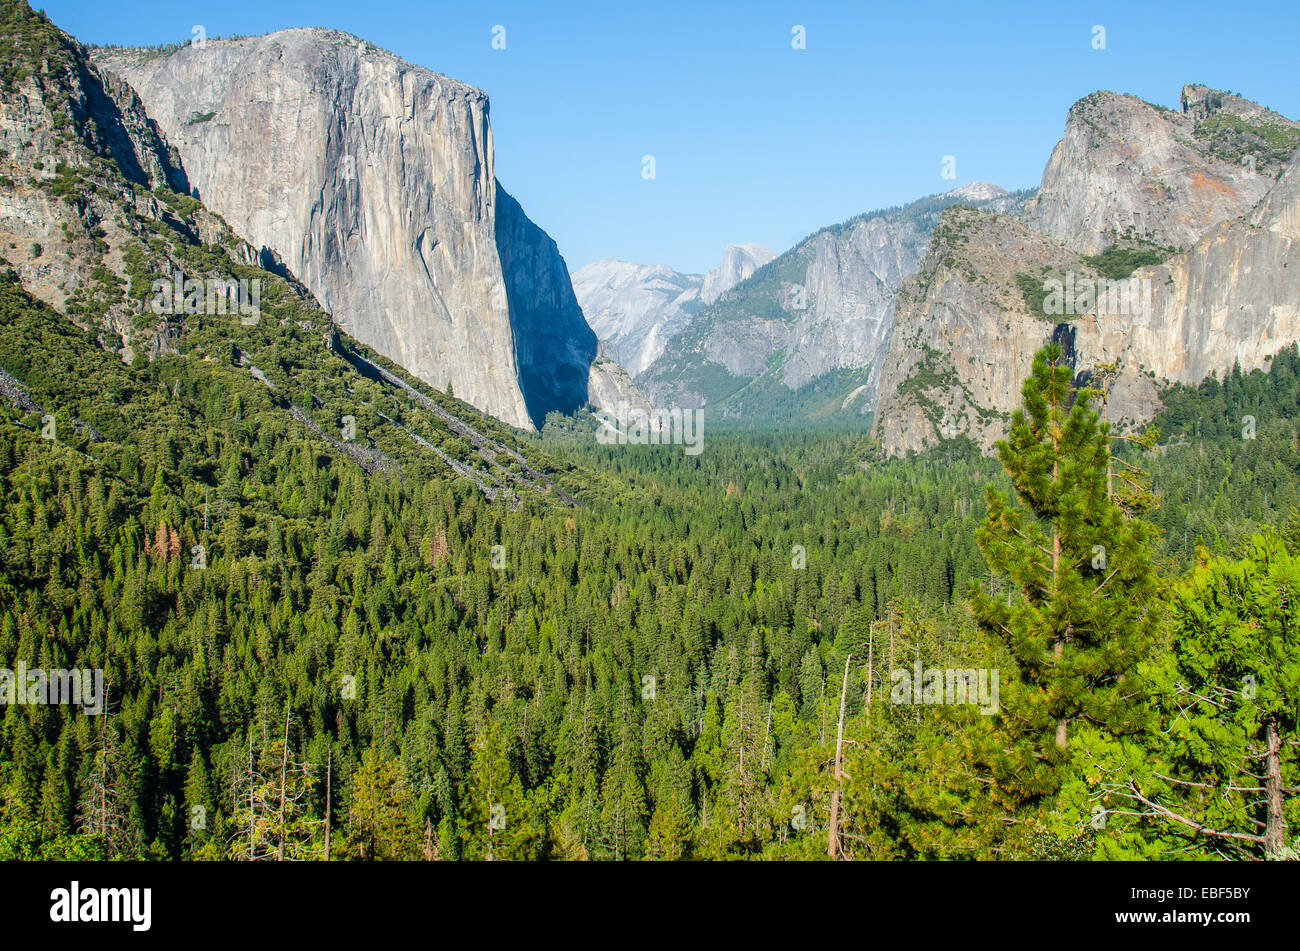 La célèbre vue de tunnel dans la région de Yosemite National Park Banque D'Images